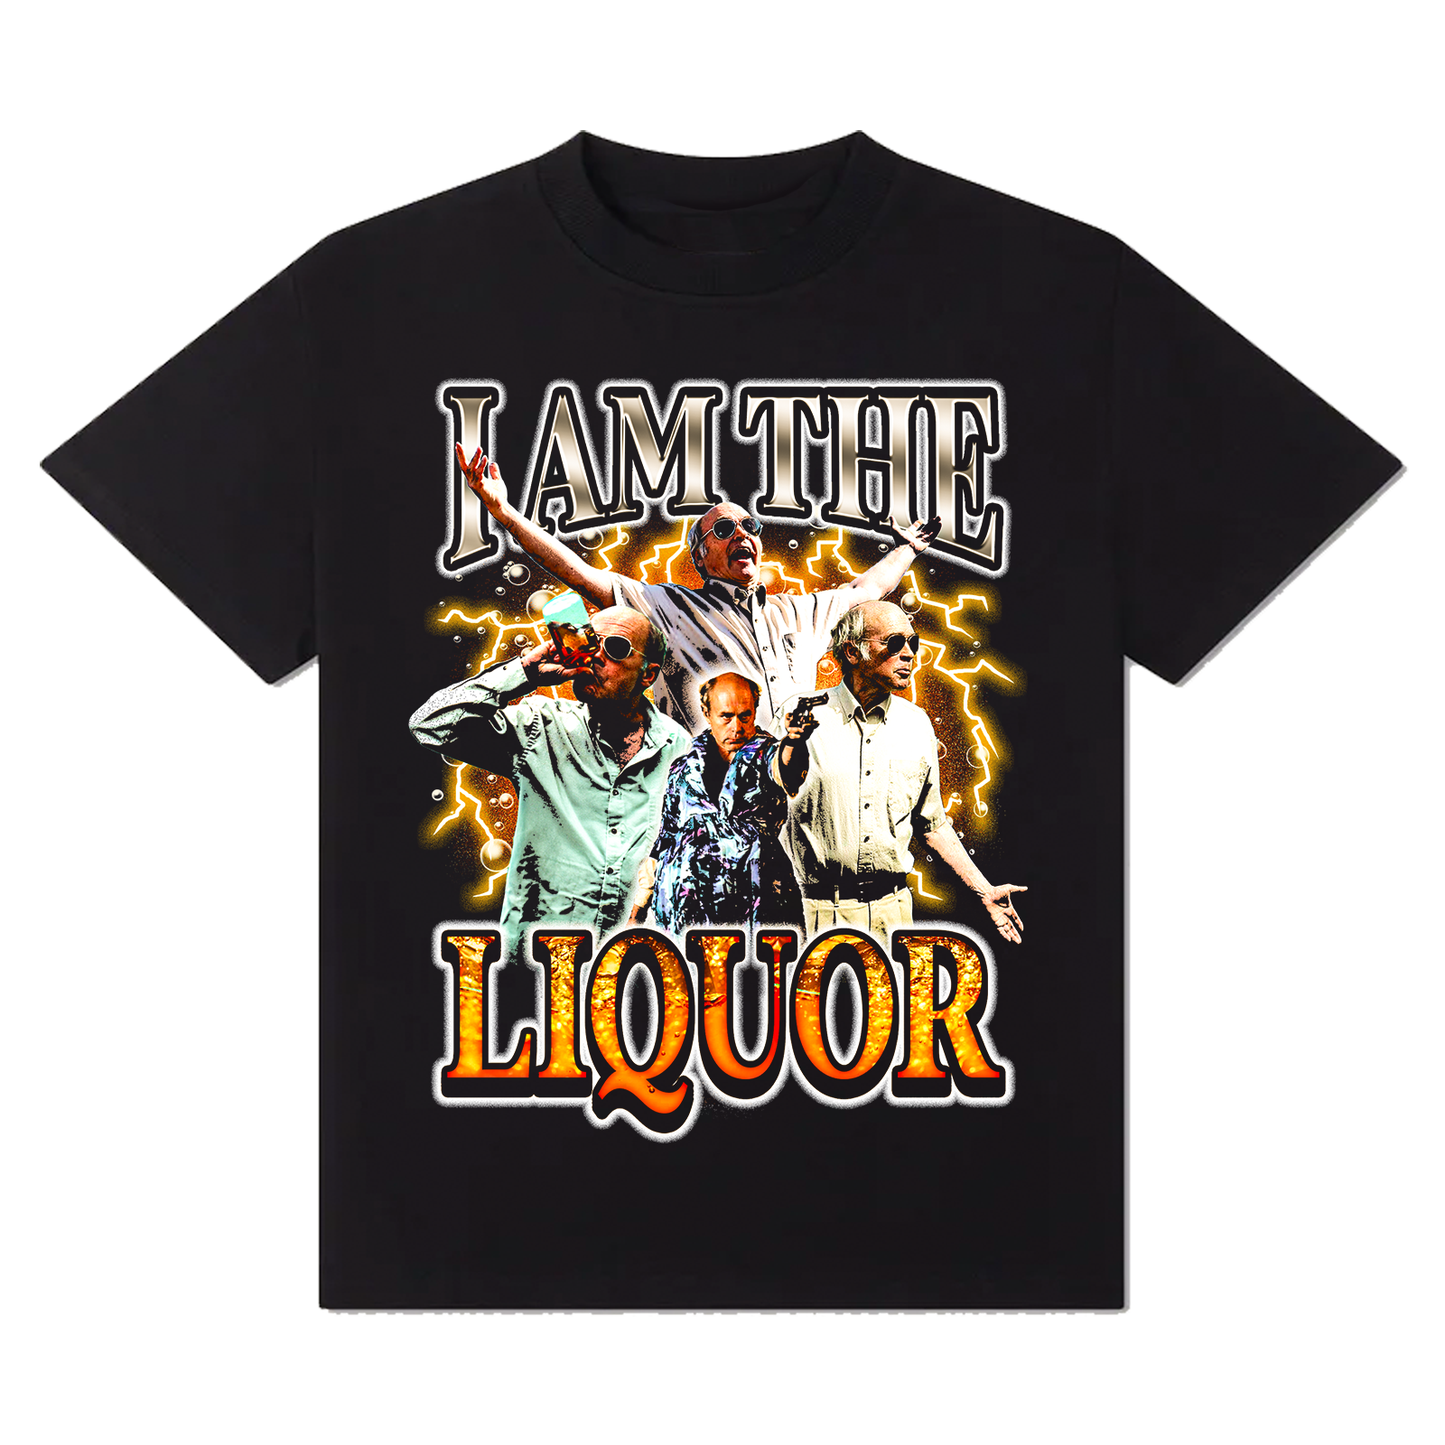 I Am the Liquor T-Shirt!